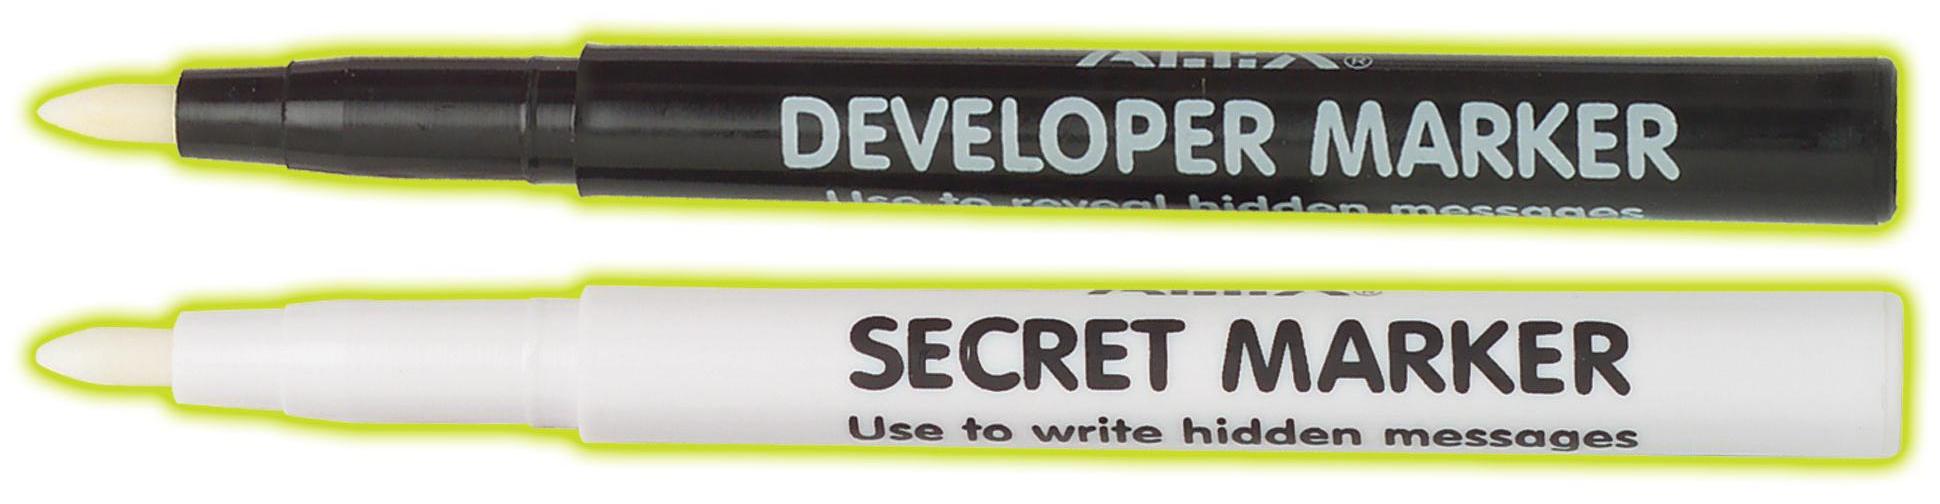 Secret marker kit. Kit de spionaj pentru mesaje secrete